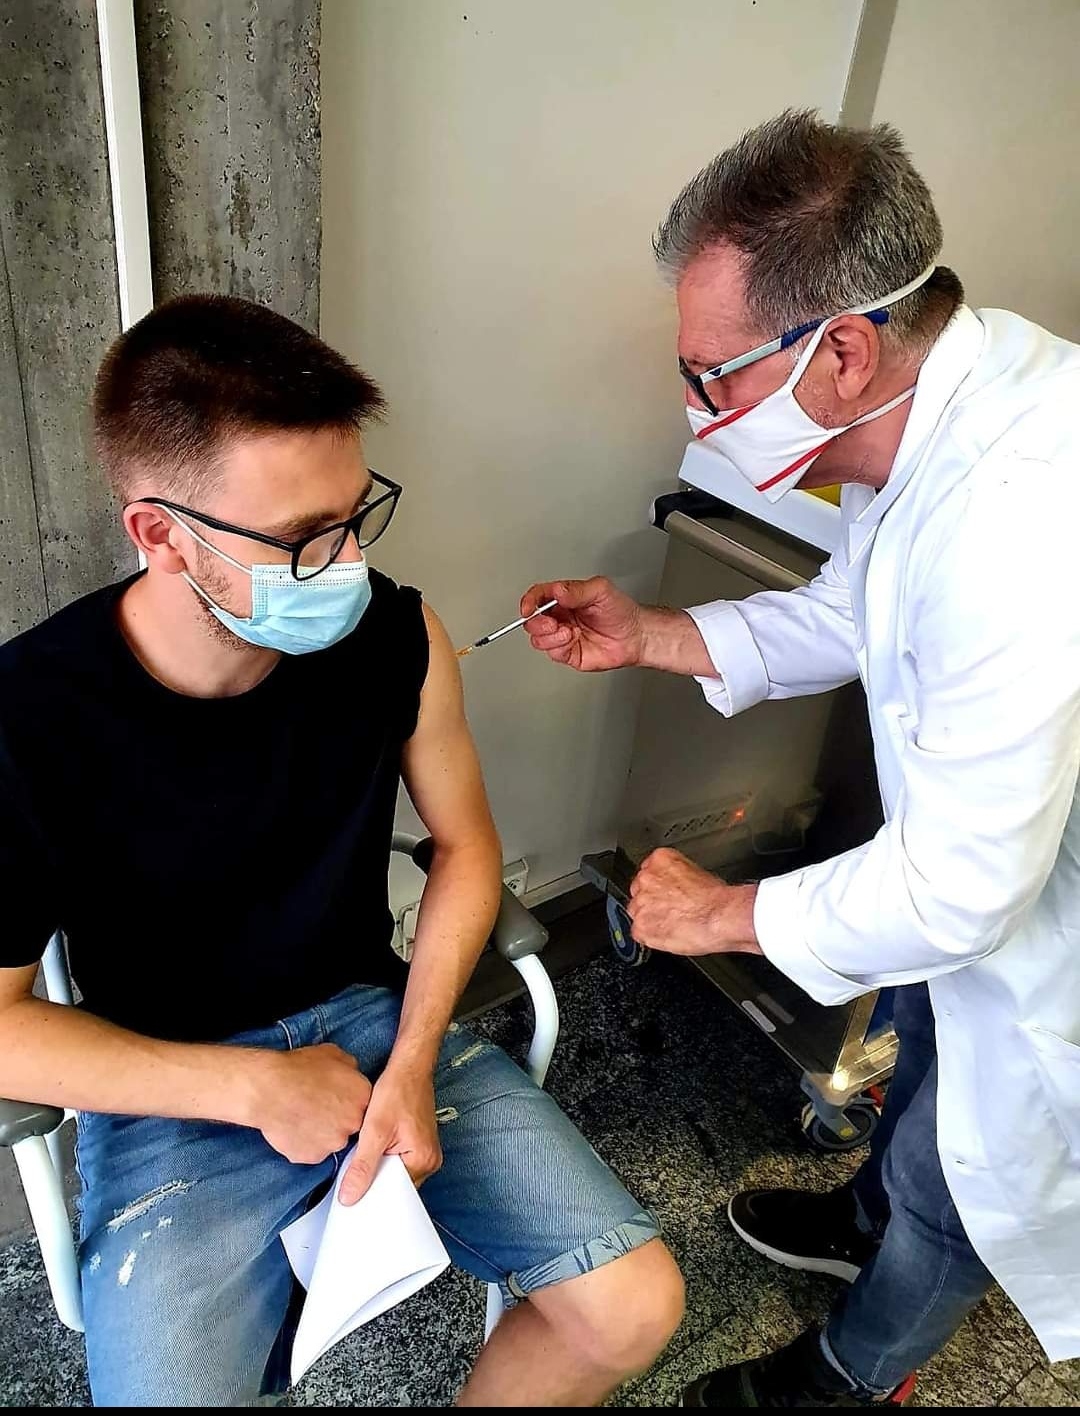 Grandioso al Centro vaccinale di Crema: il dottor Maurizio Borghetti vaccina il figlio Luca. Vacciniamoci tutti che solo così vinceremo il virus!